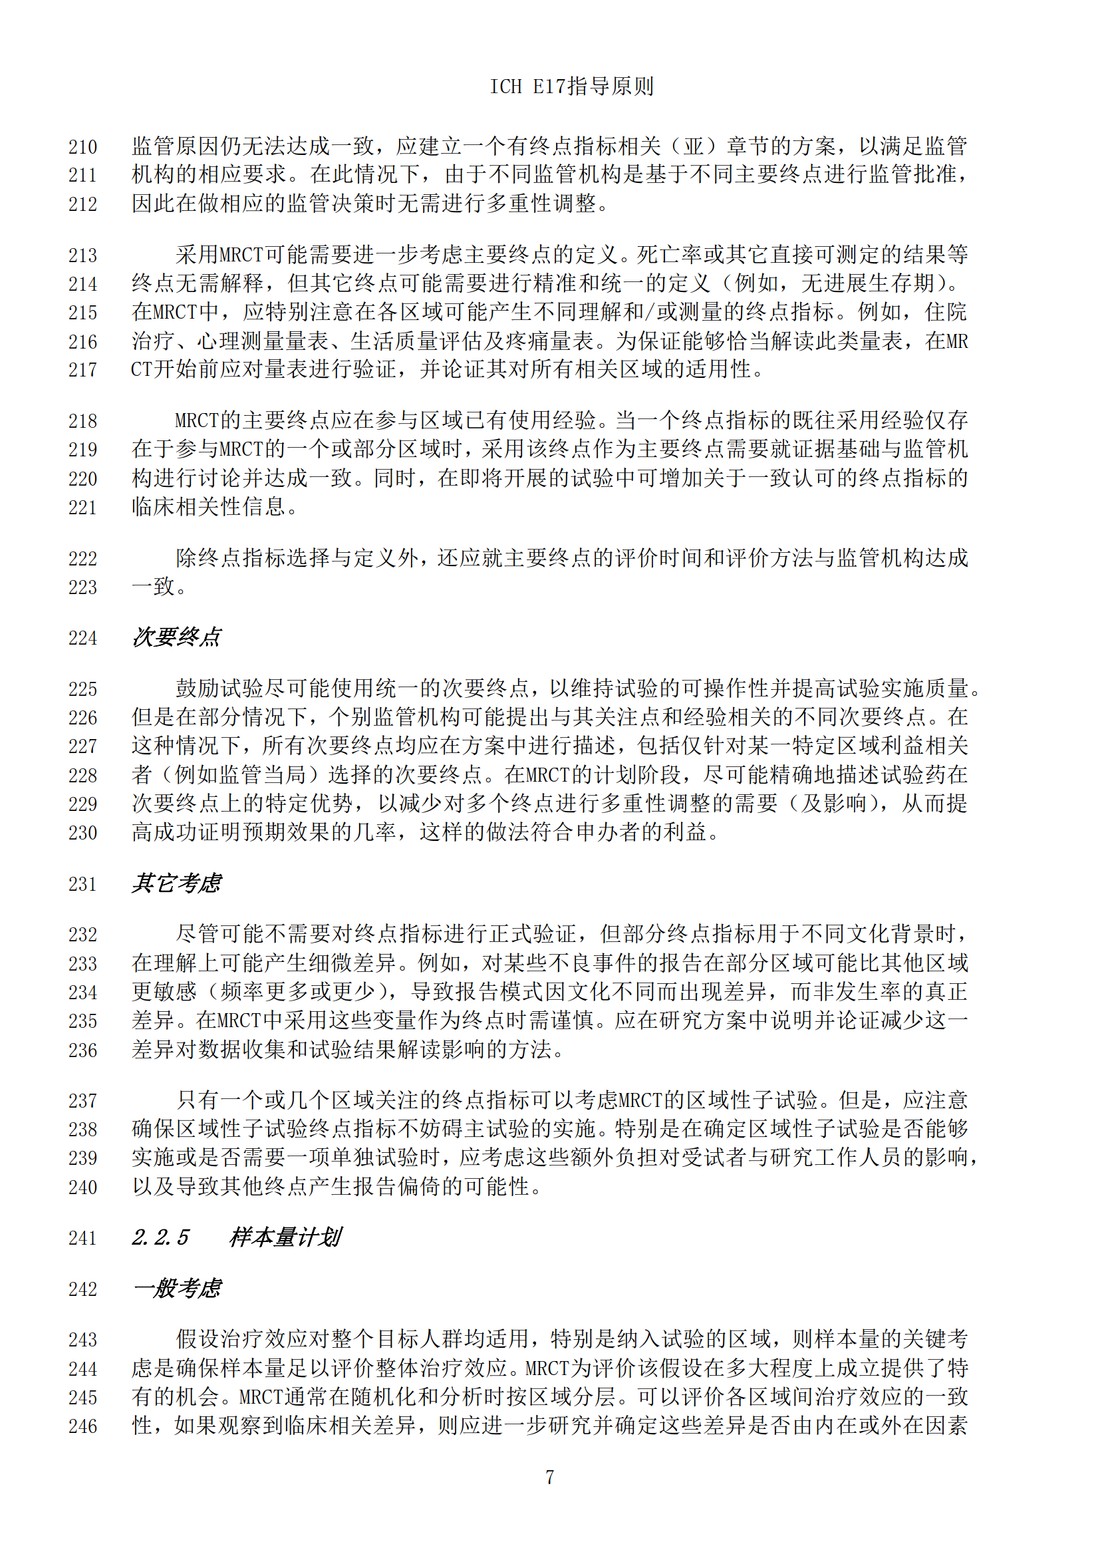 E17多区域临床试验计划与设计的一般原则（中文翻译公开征求意见稿）_10.jpg